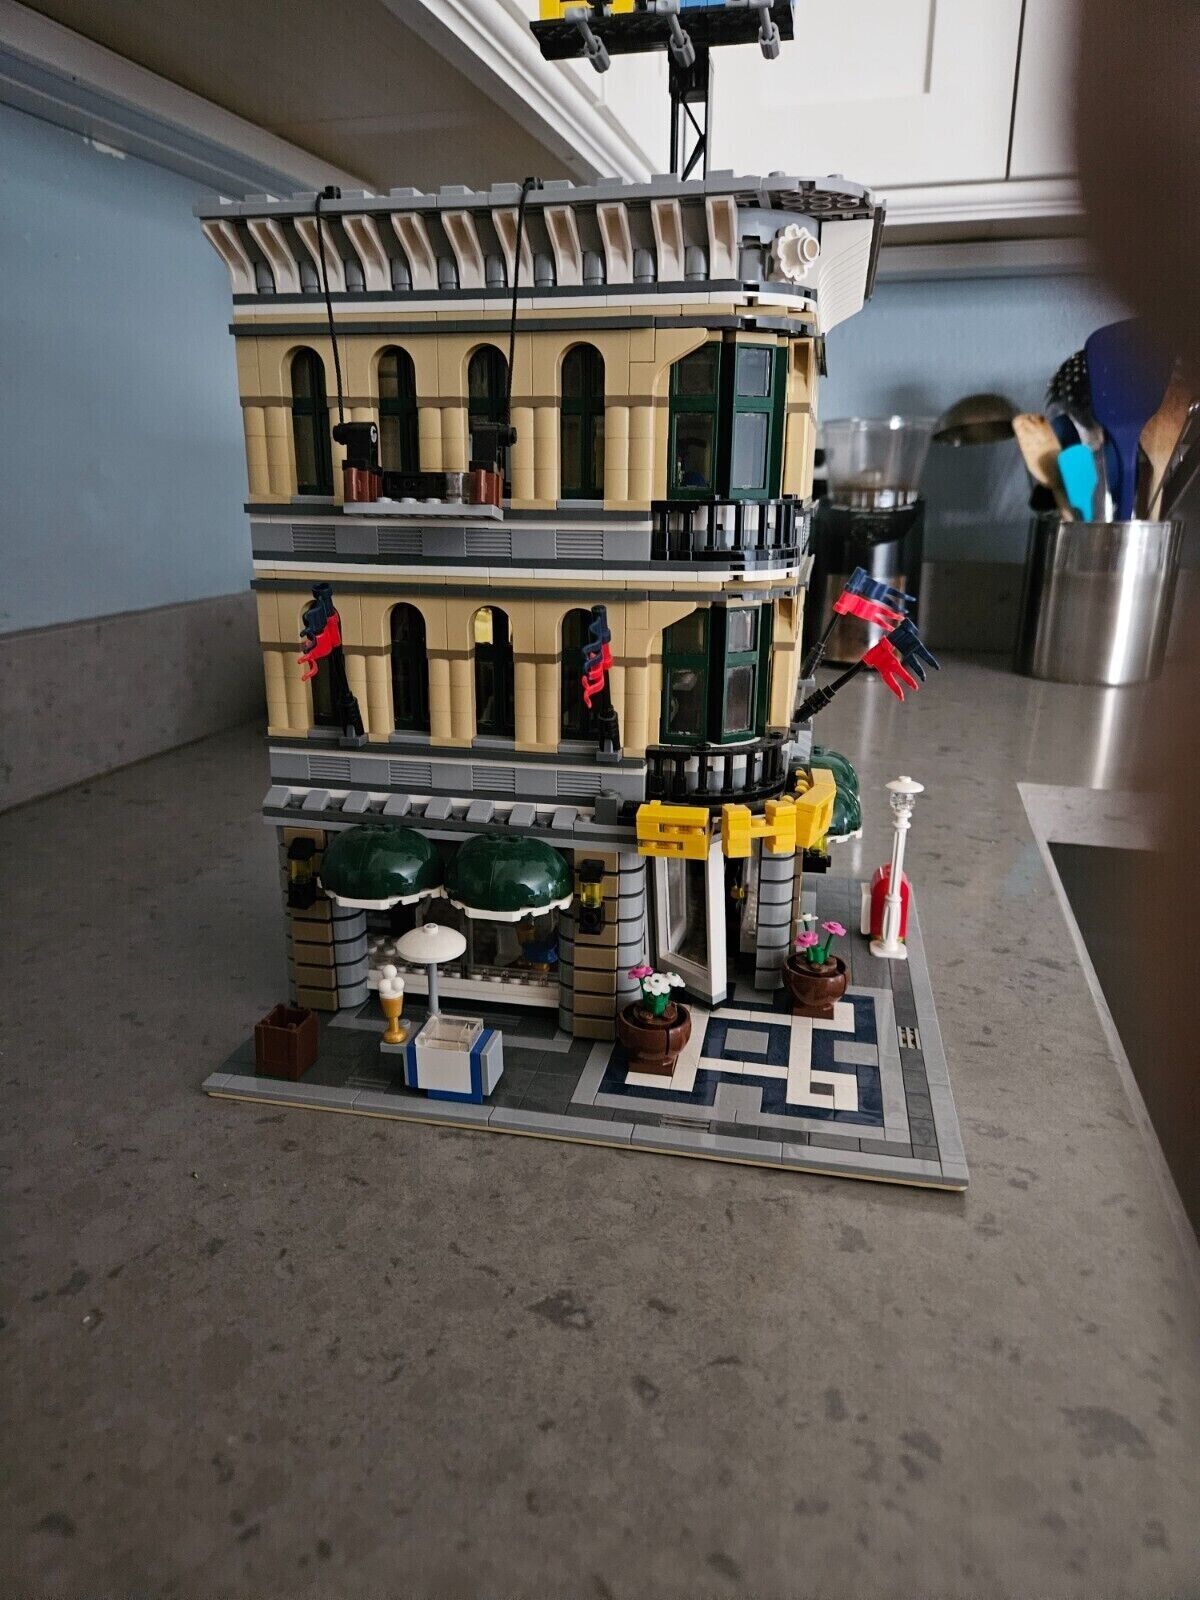 Lego (10211) Modular - Grand Emporium: Complete with no minifigures